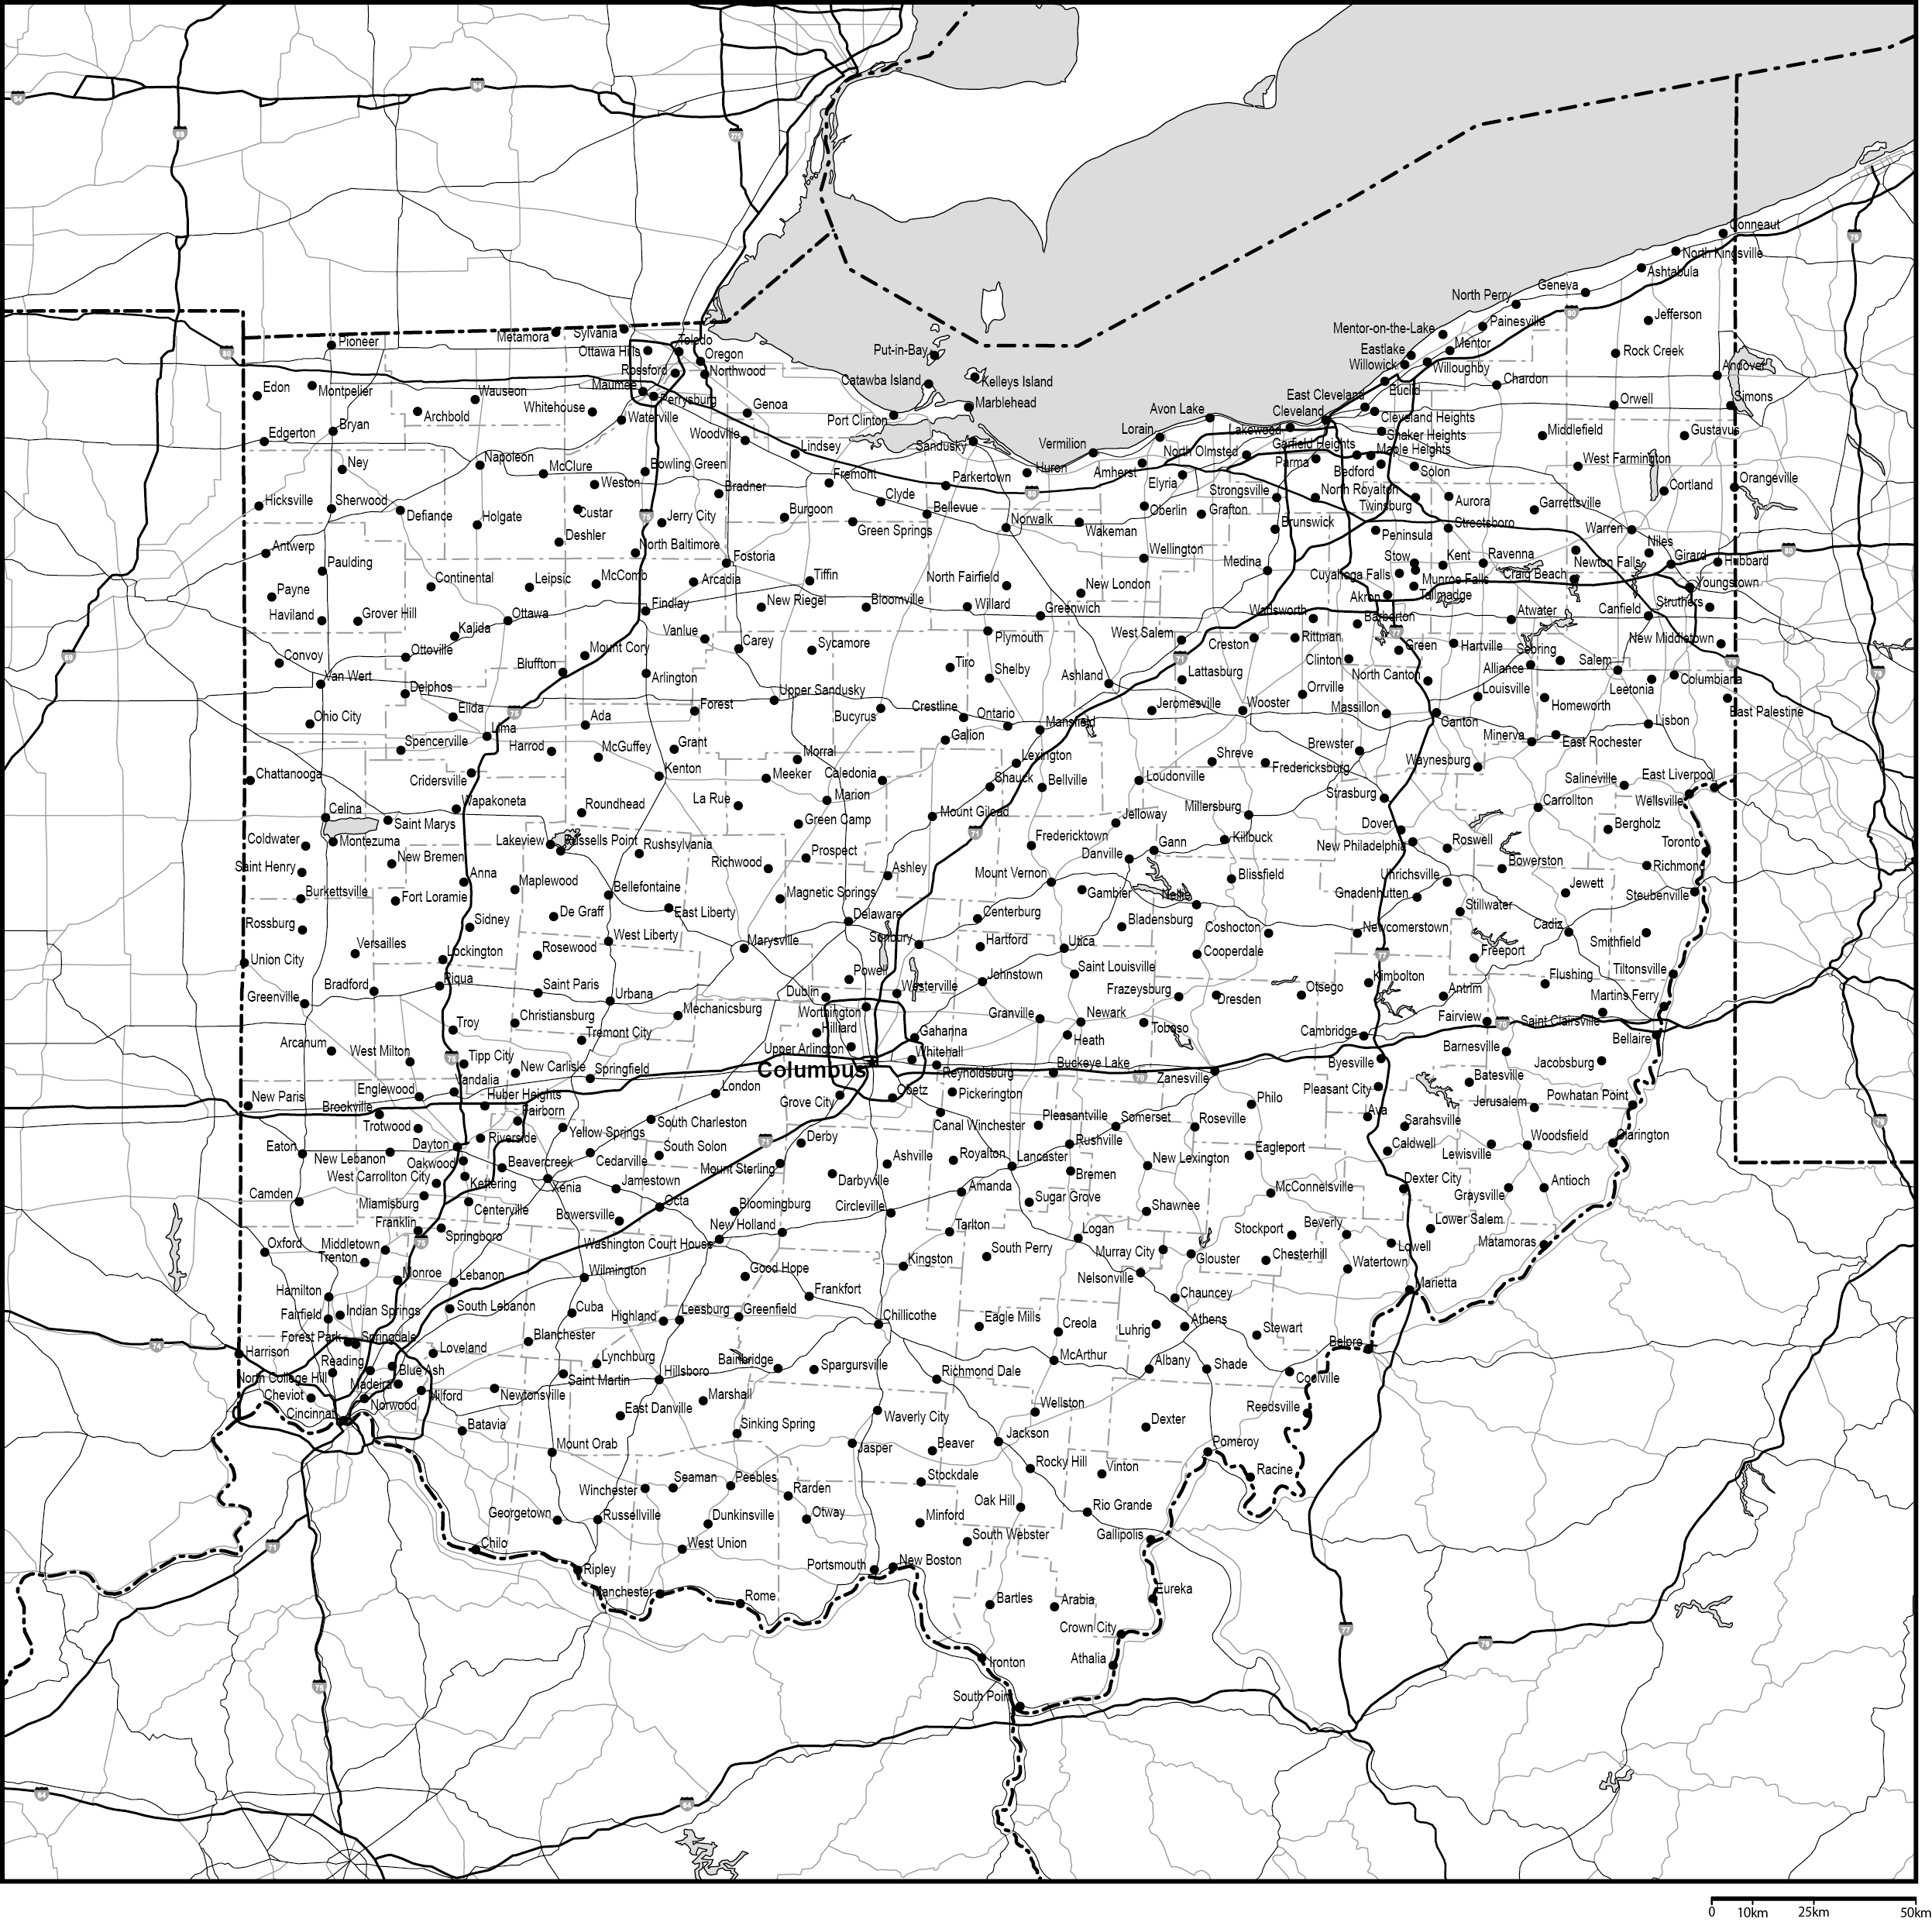 オハイオ州郡分け白地図州都・主な都市・道路あり(英語)フリーデータの画像